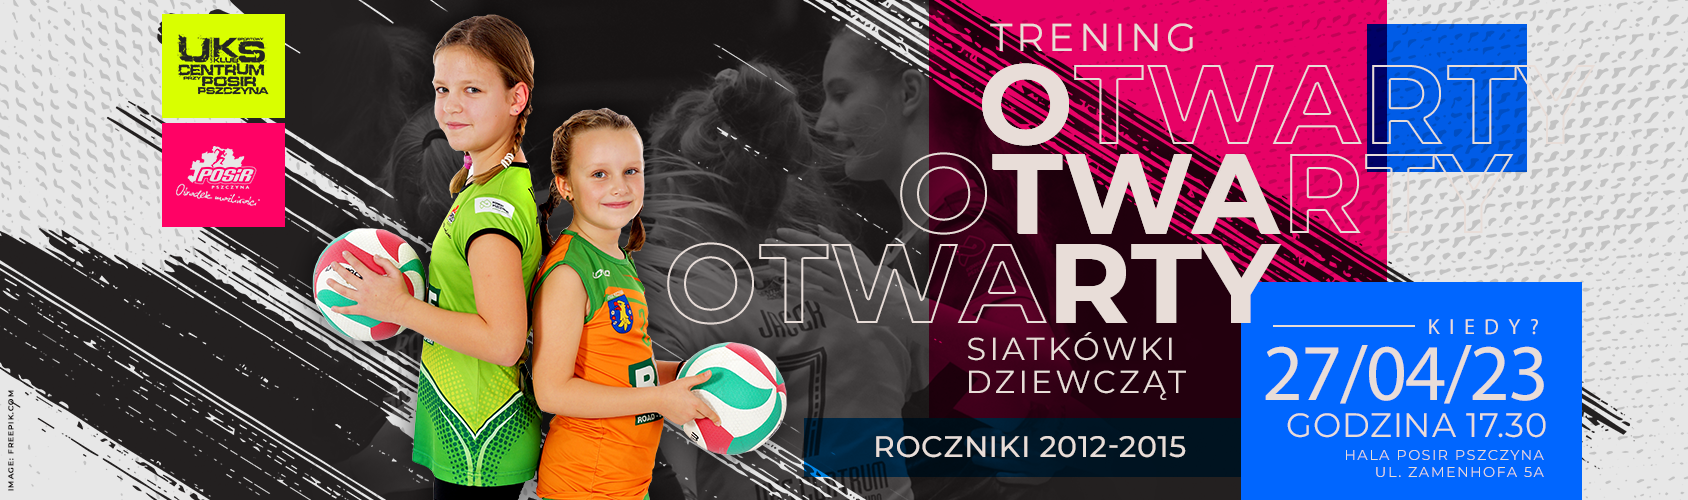 Trening Siatkówki Dziewcząt - baner informacyjny; image: freepik.com